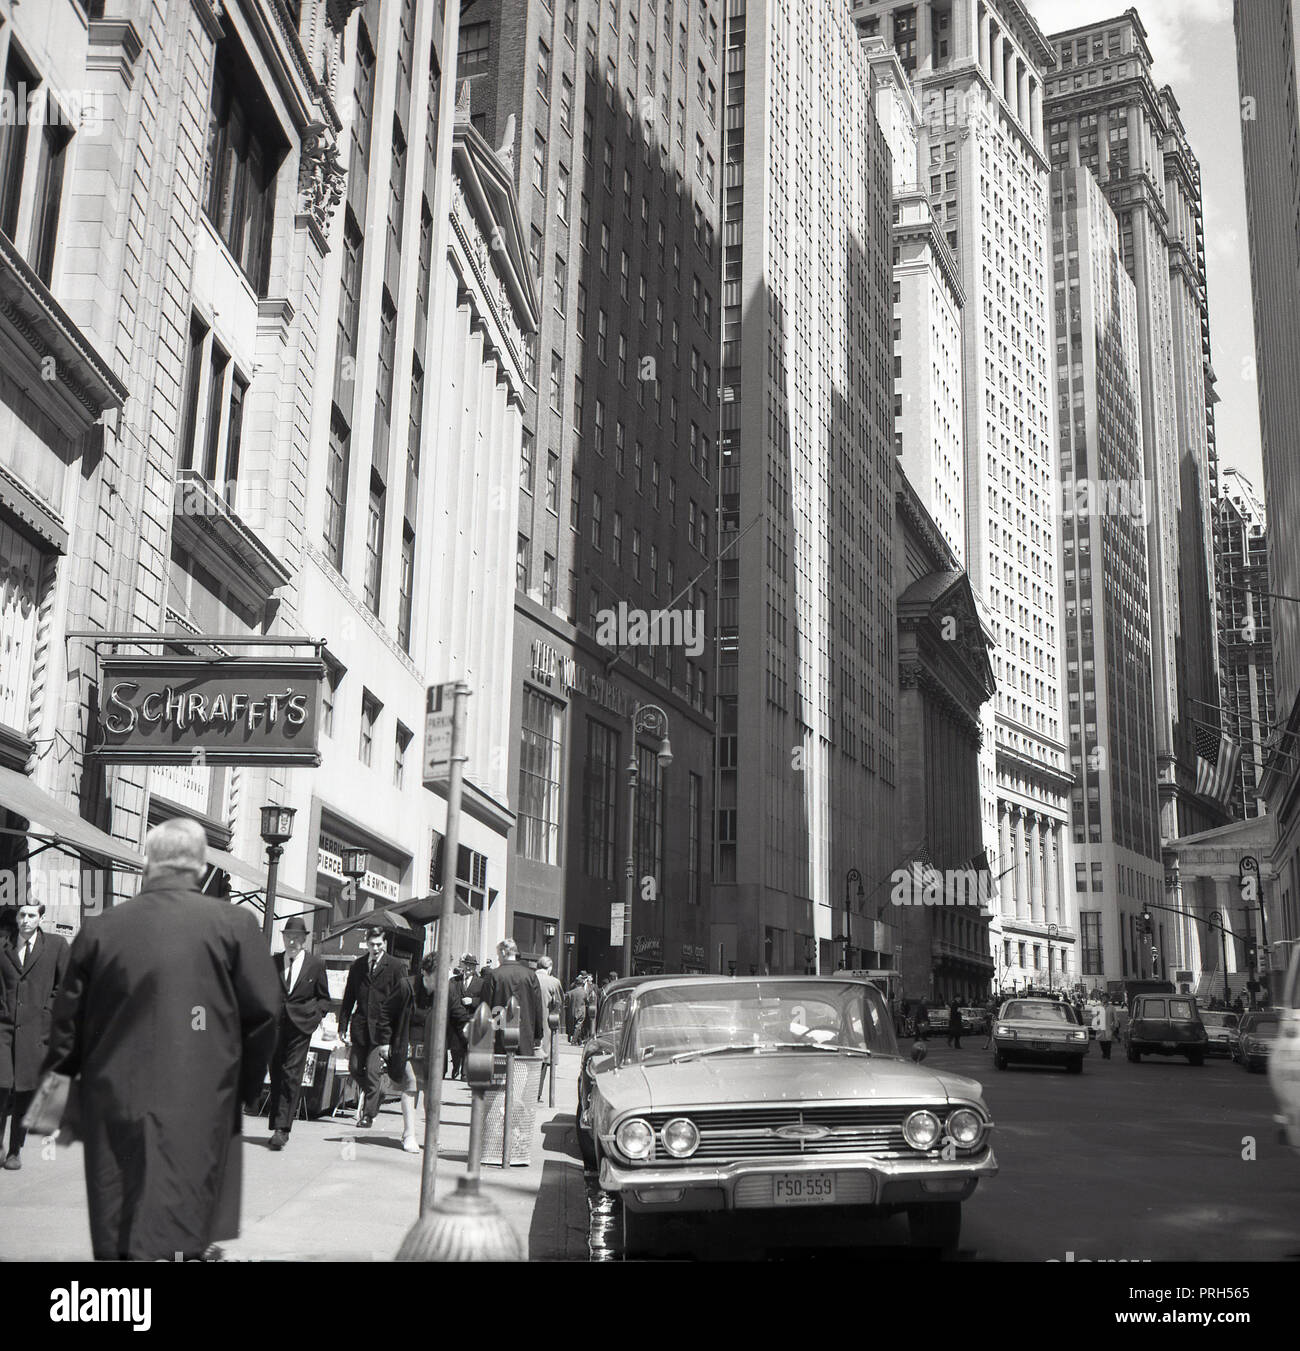 1950, historische, New York City und die Wall Street, die die hohen Bürogebäuden und Wolkenkratzer des Financial District und ein Zeichen für Schraffat's, einem berühmten Kette von Kantinen und Restaurants, NY, USA. Stockfoto